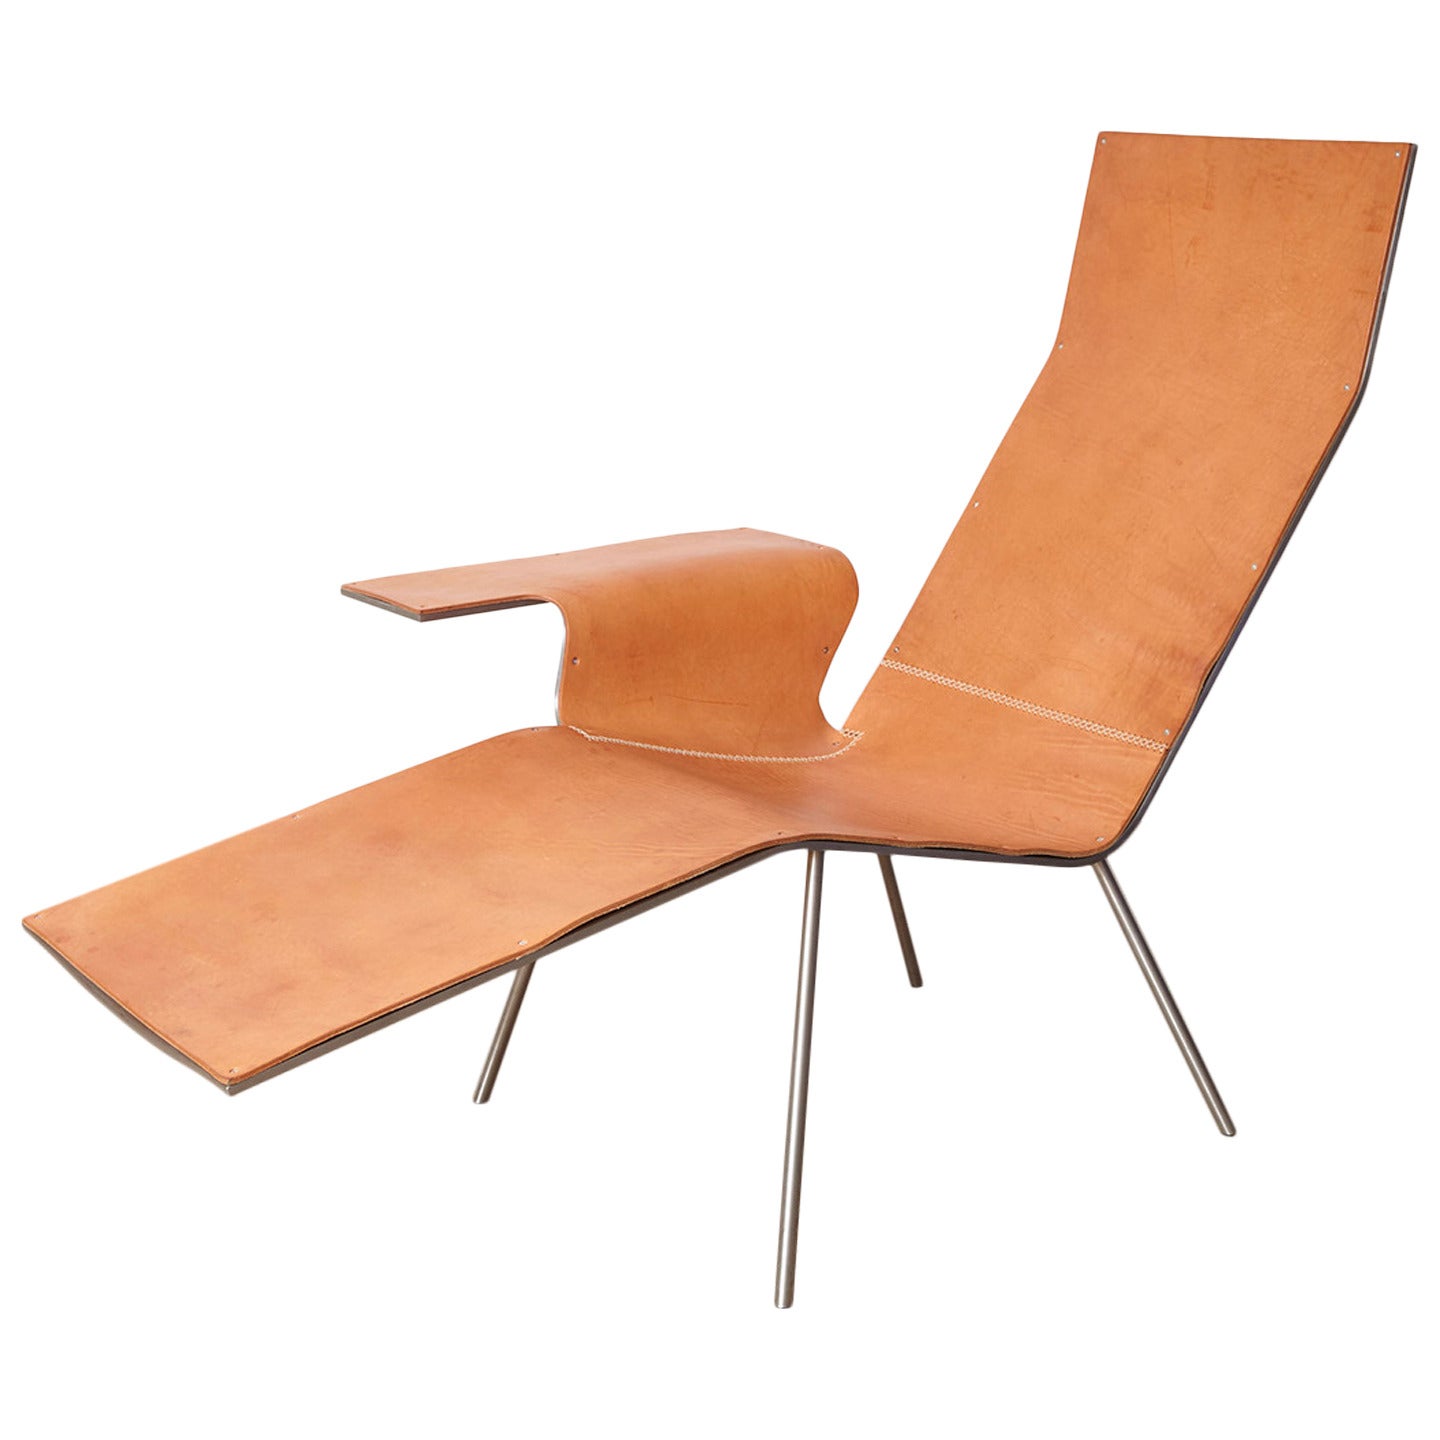 Maarten van Severen Lounge Chair "LL04"